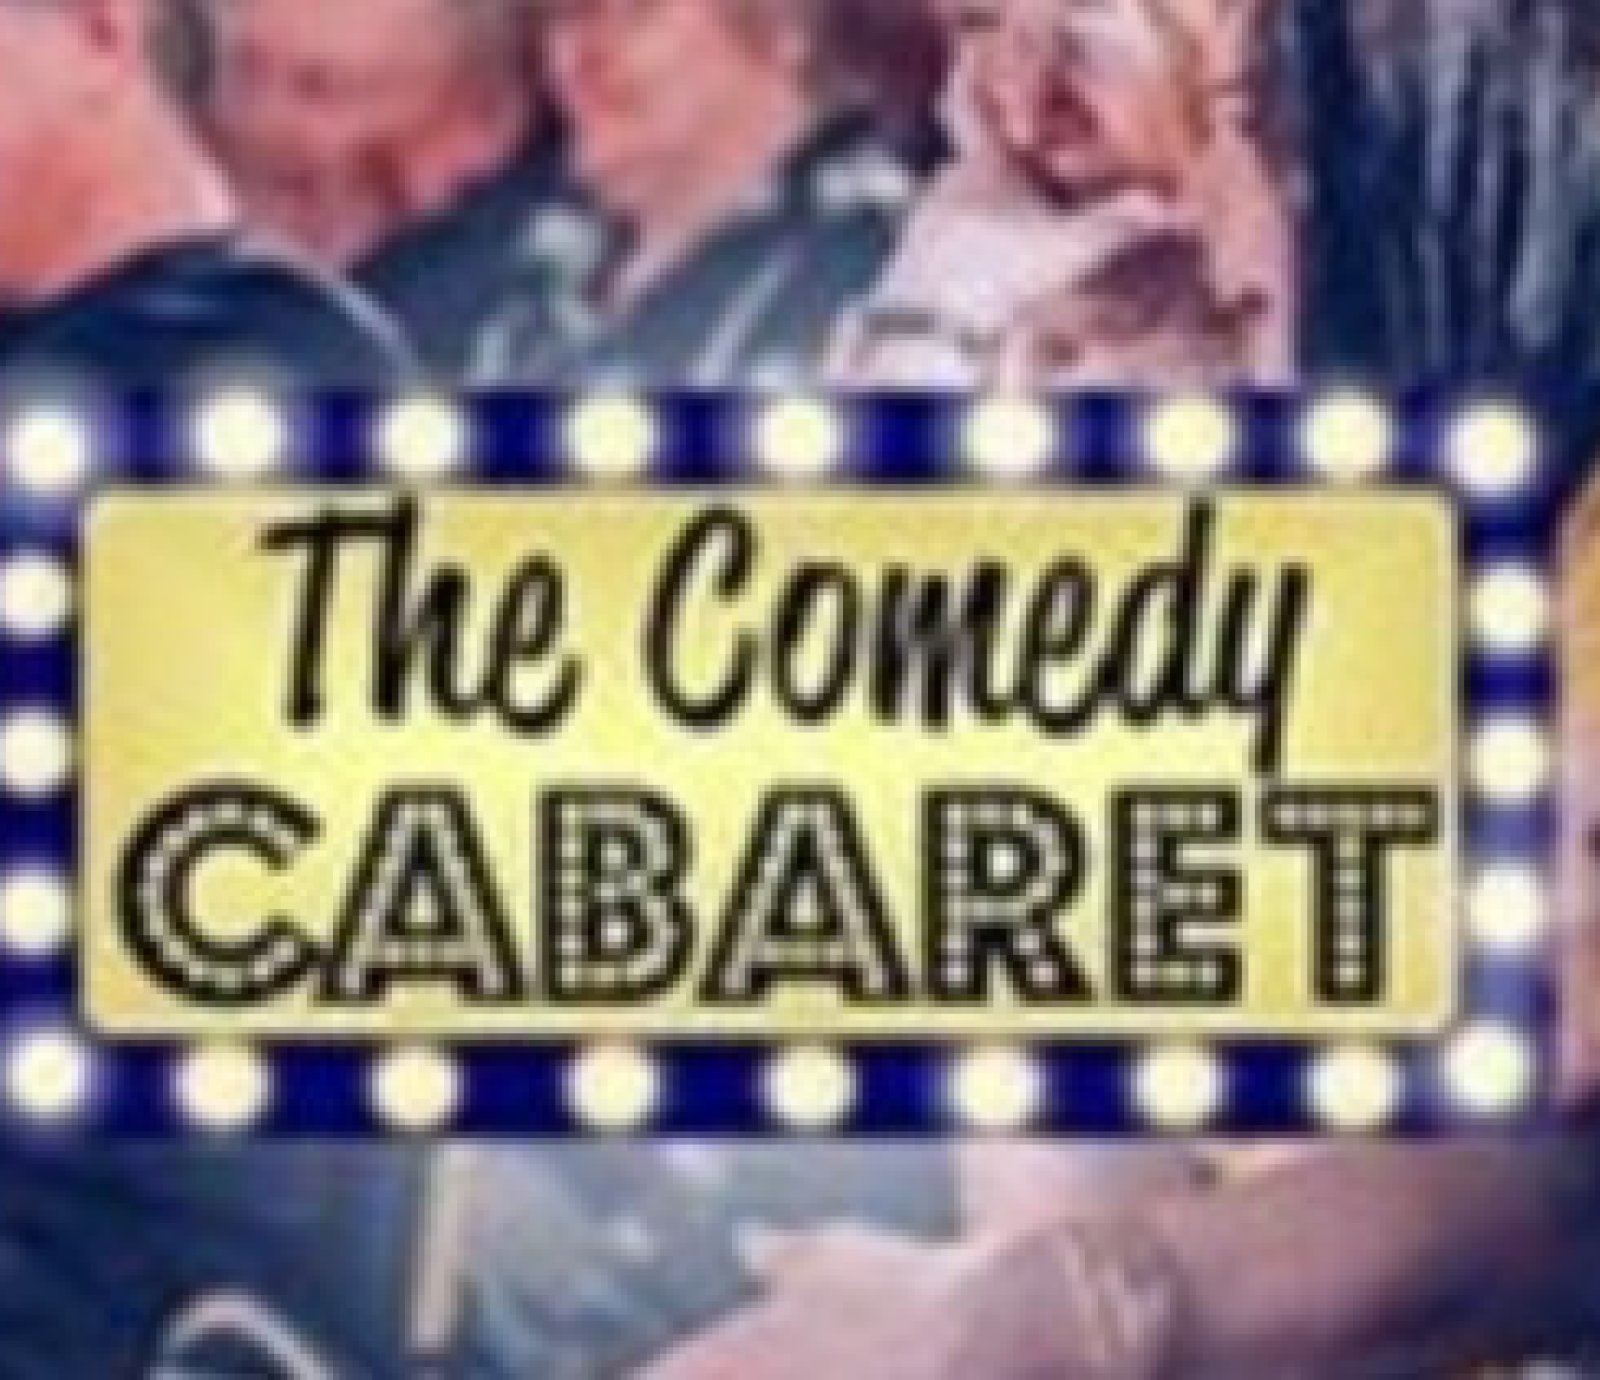 The Comedy Cabaret